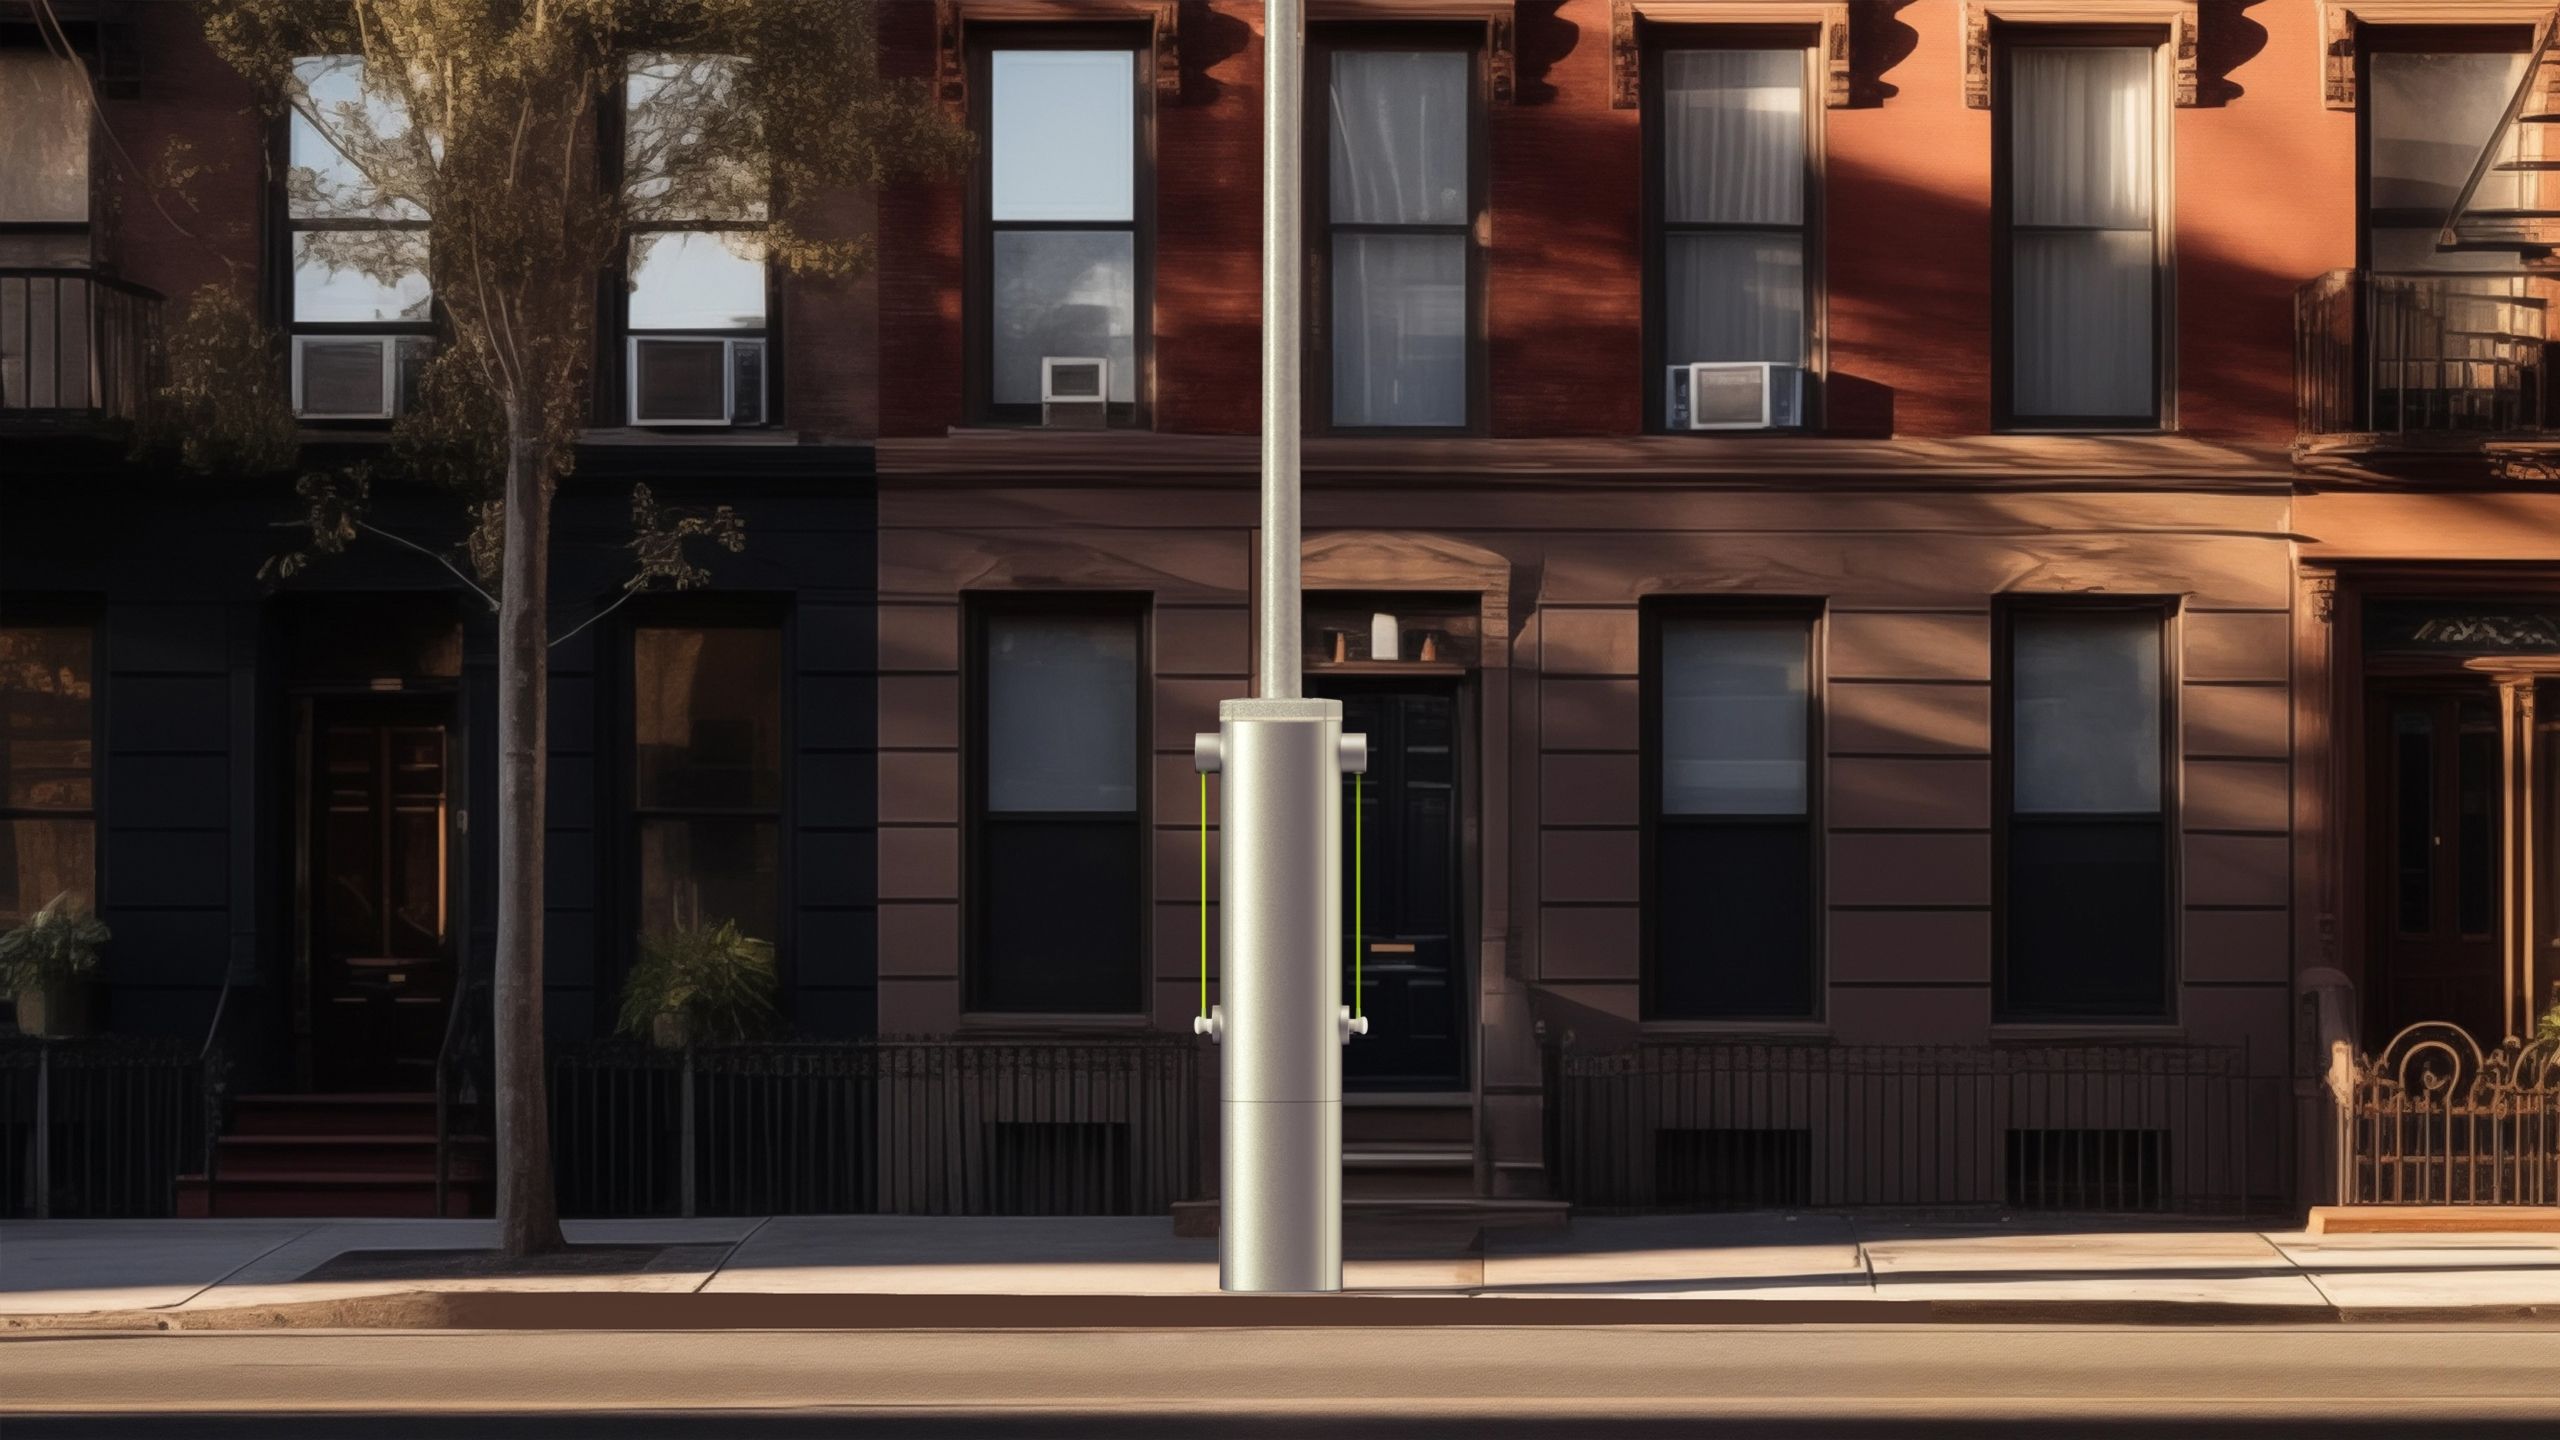 نیویارک کی سڑک پر ایک لائٹ پوسٹ جسے وولٹ پوسٹ چارجر میں تبدیل کر دیا گیا ہے۔